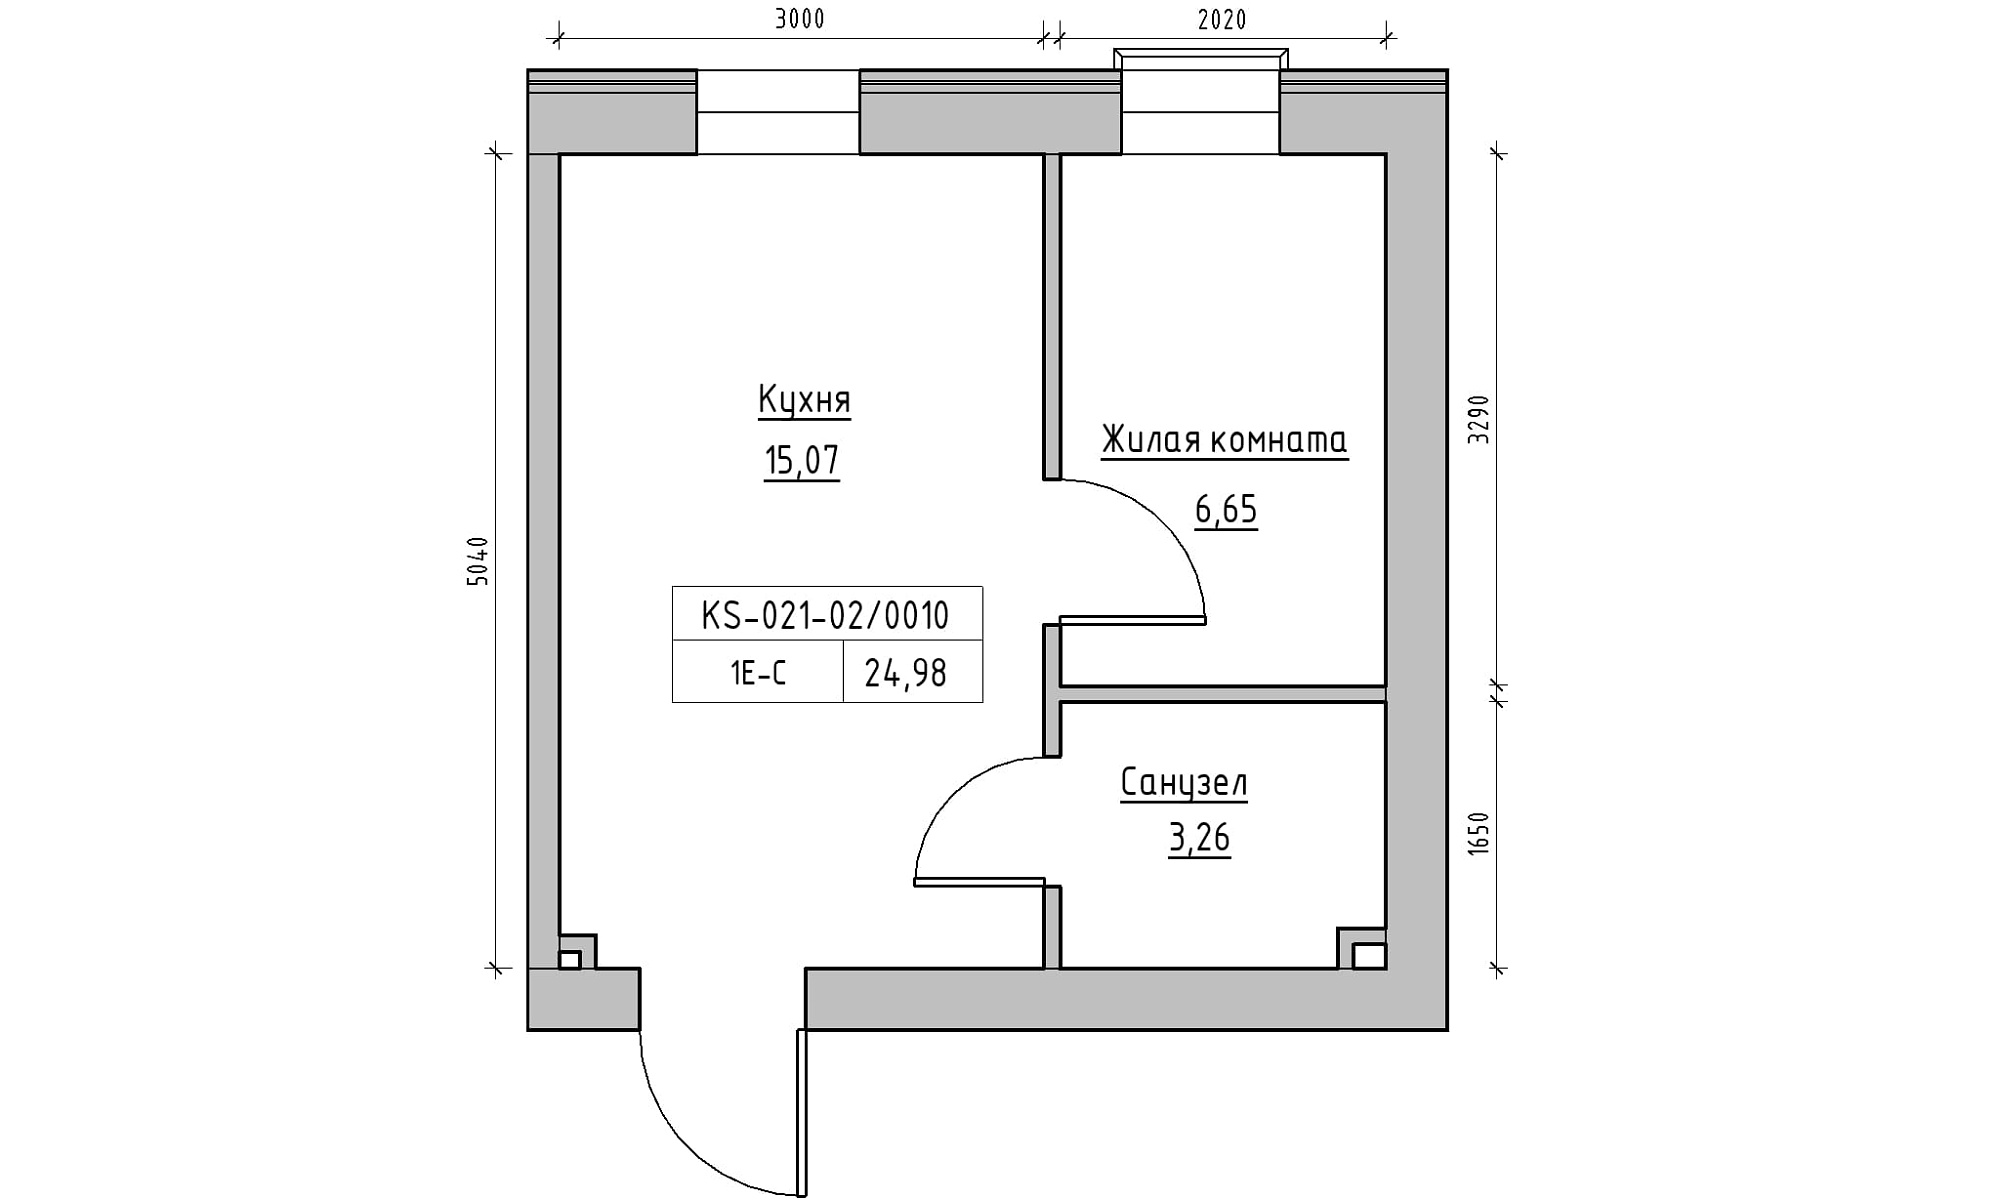 Планировка 1-к квартира площей 24.98м2, KS-021-02/0010.